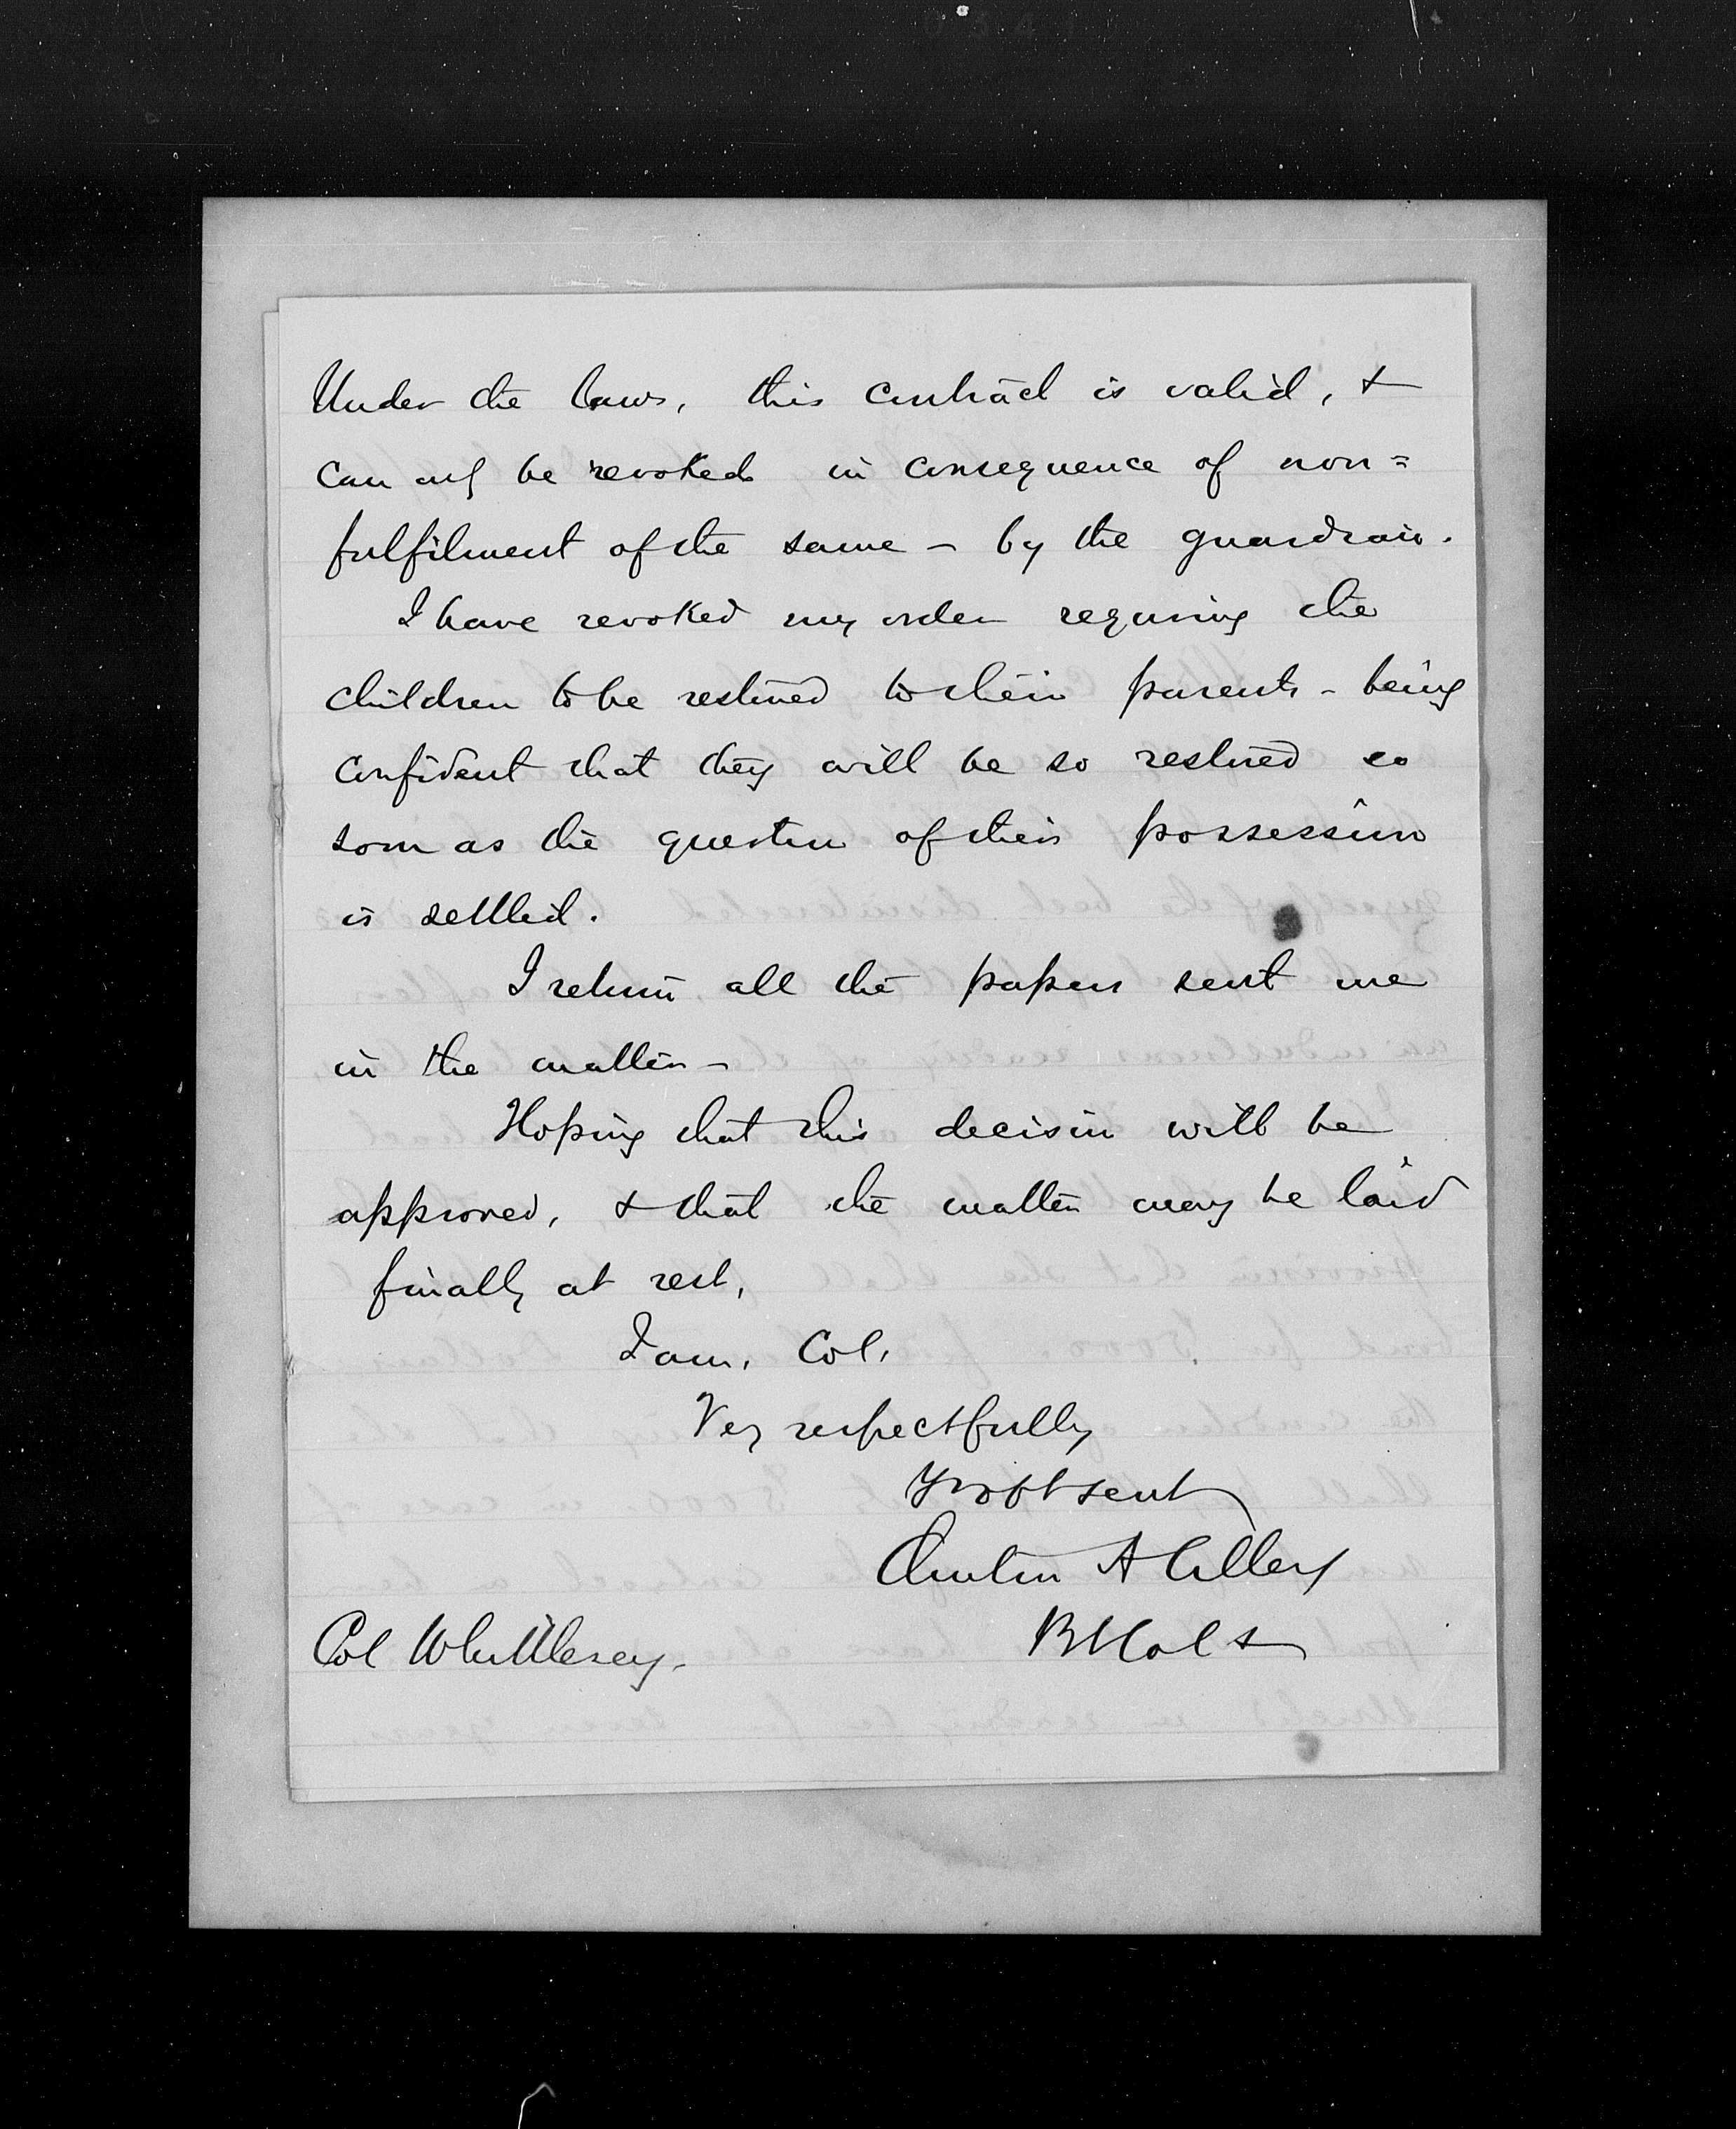 Image of handwritten letter from December 9, 1865